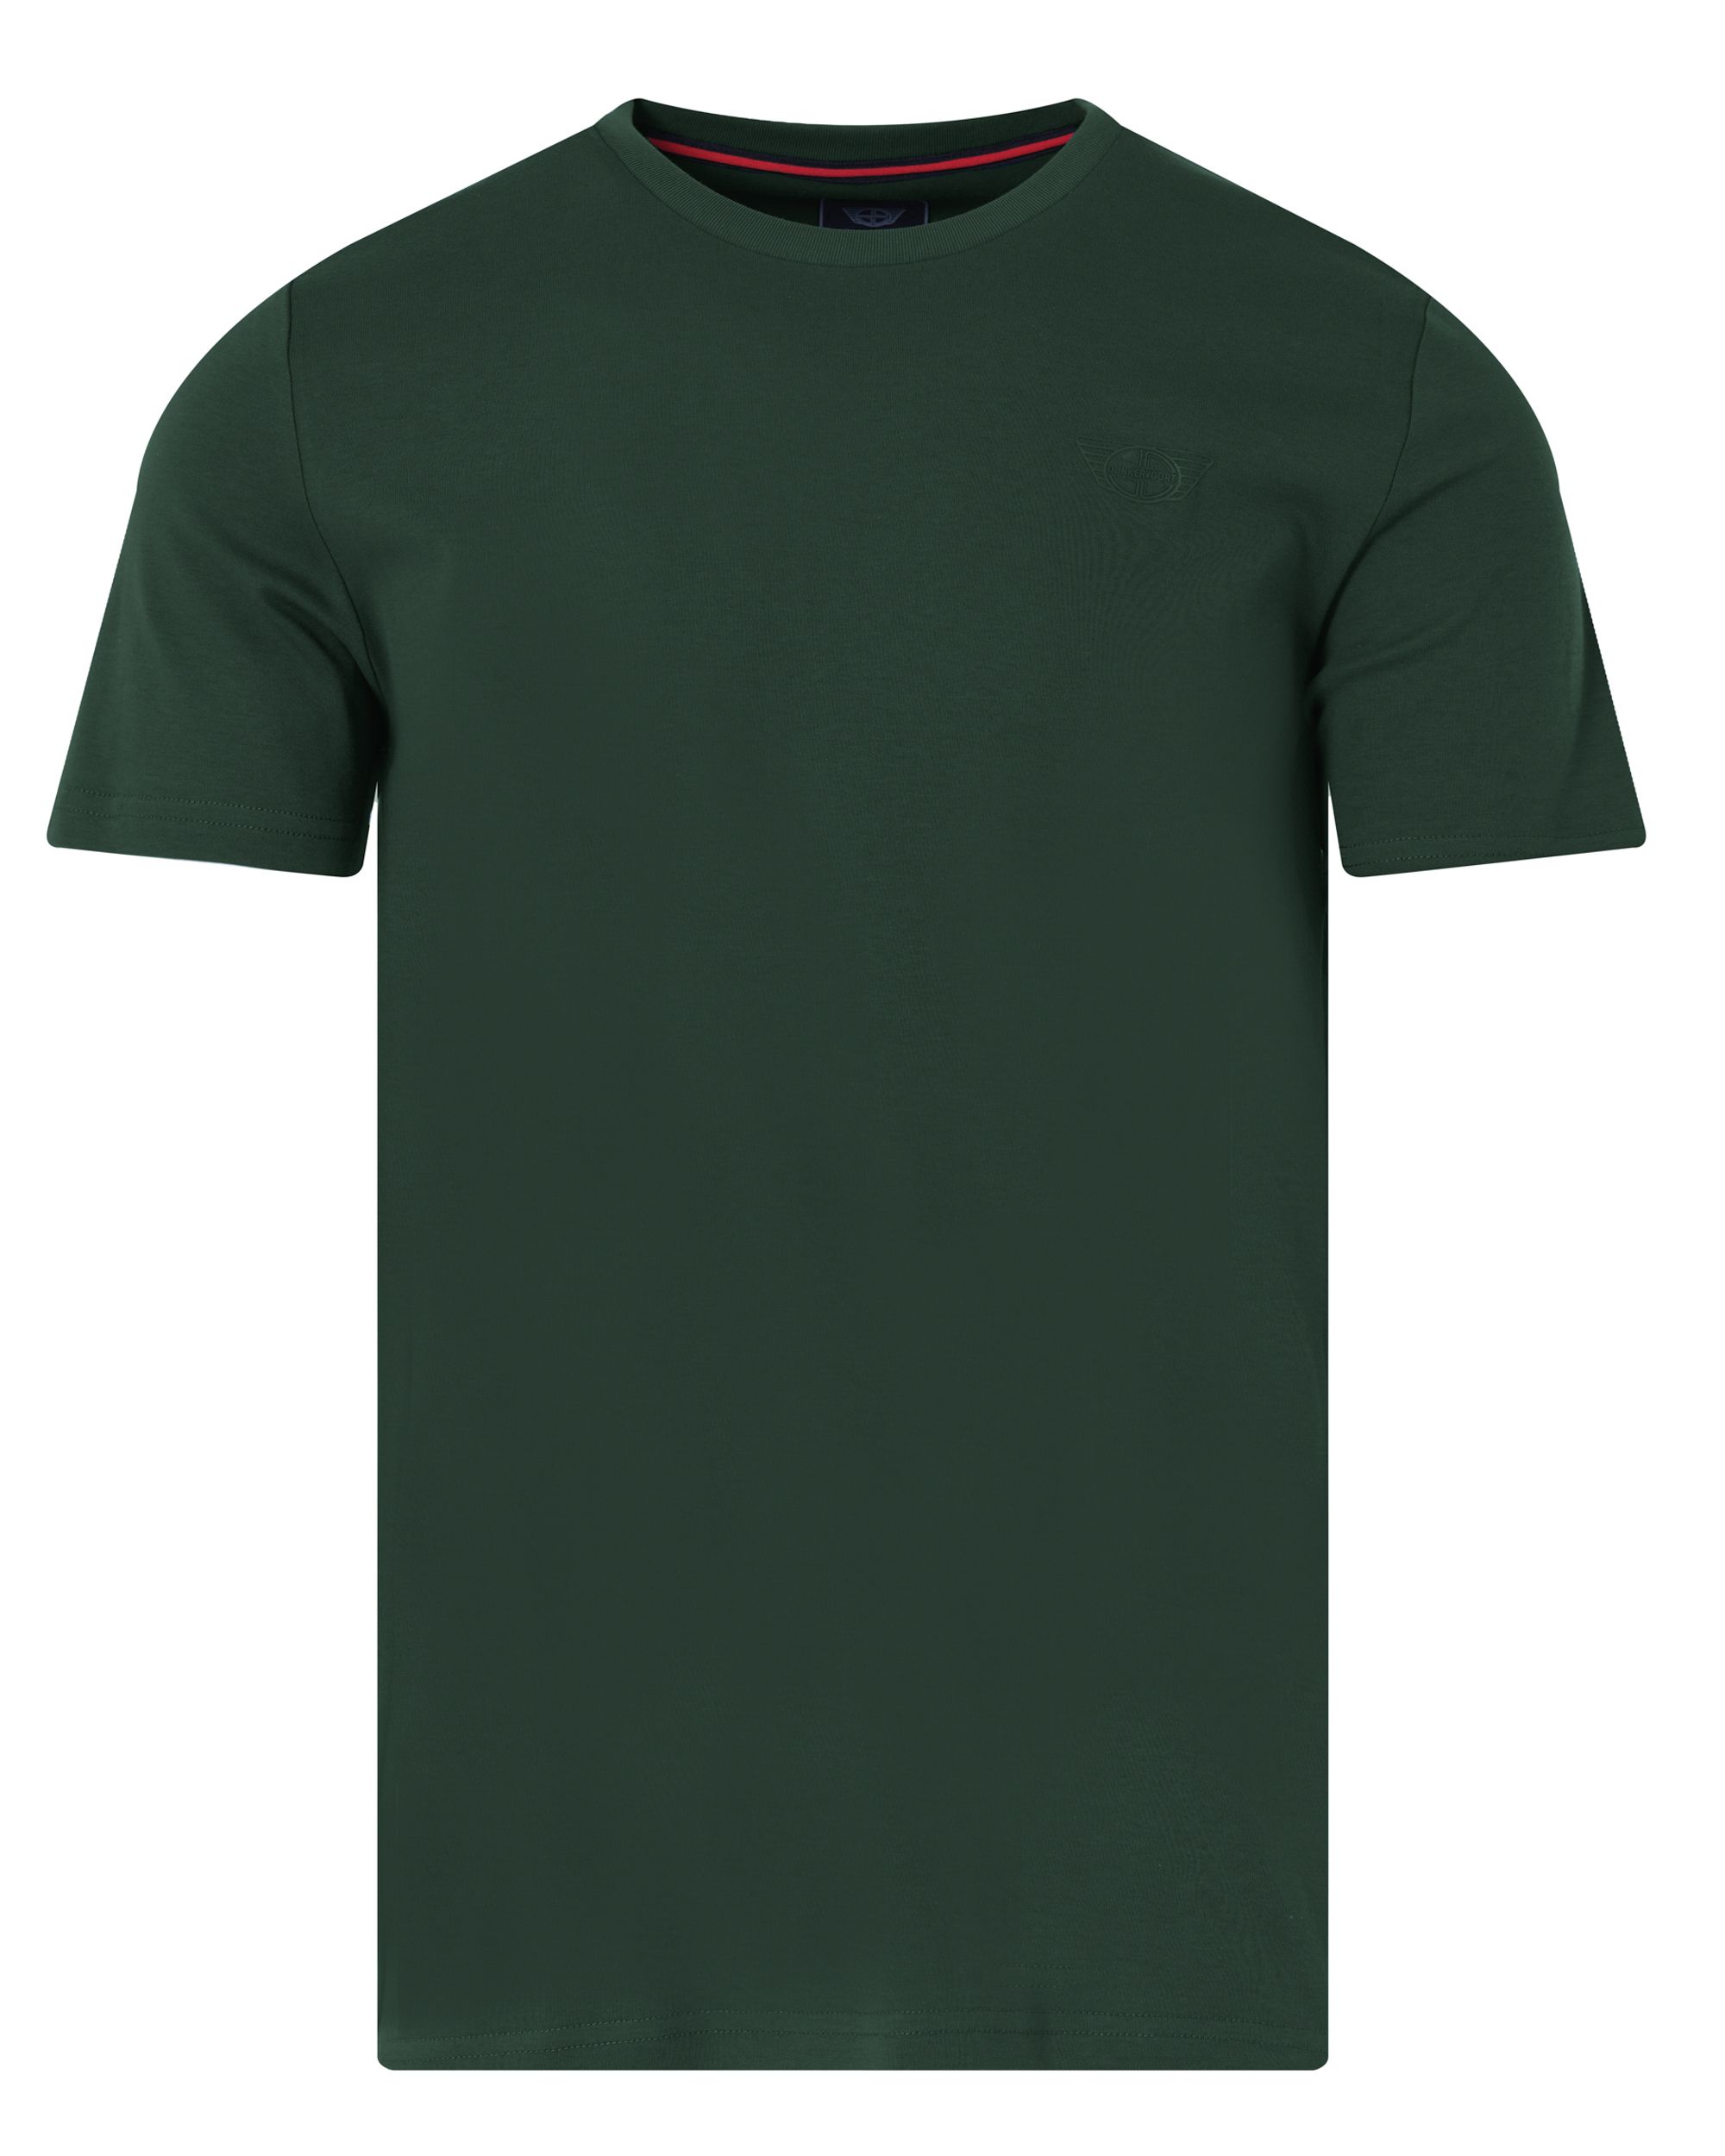 Donkervoort T-shirt KM Dark Spruce 084112-007-L